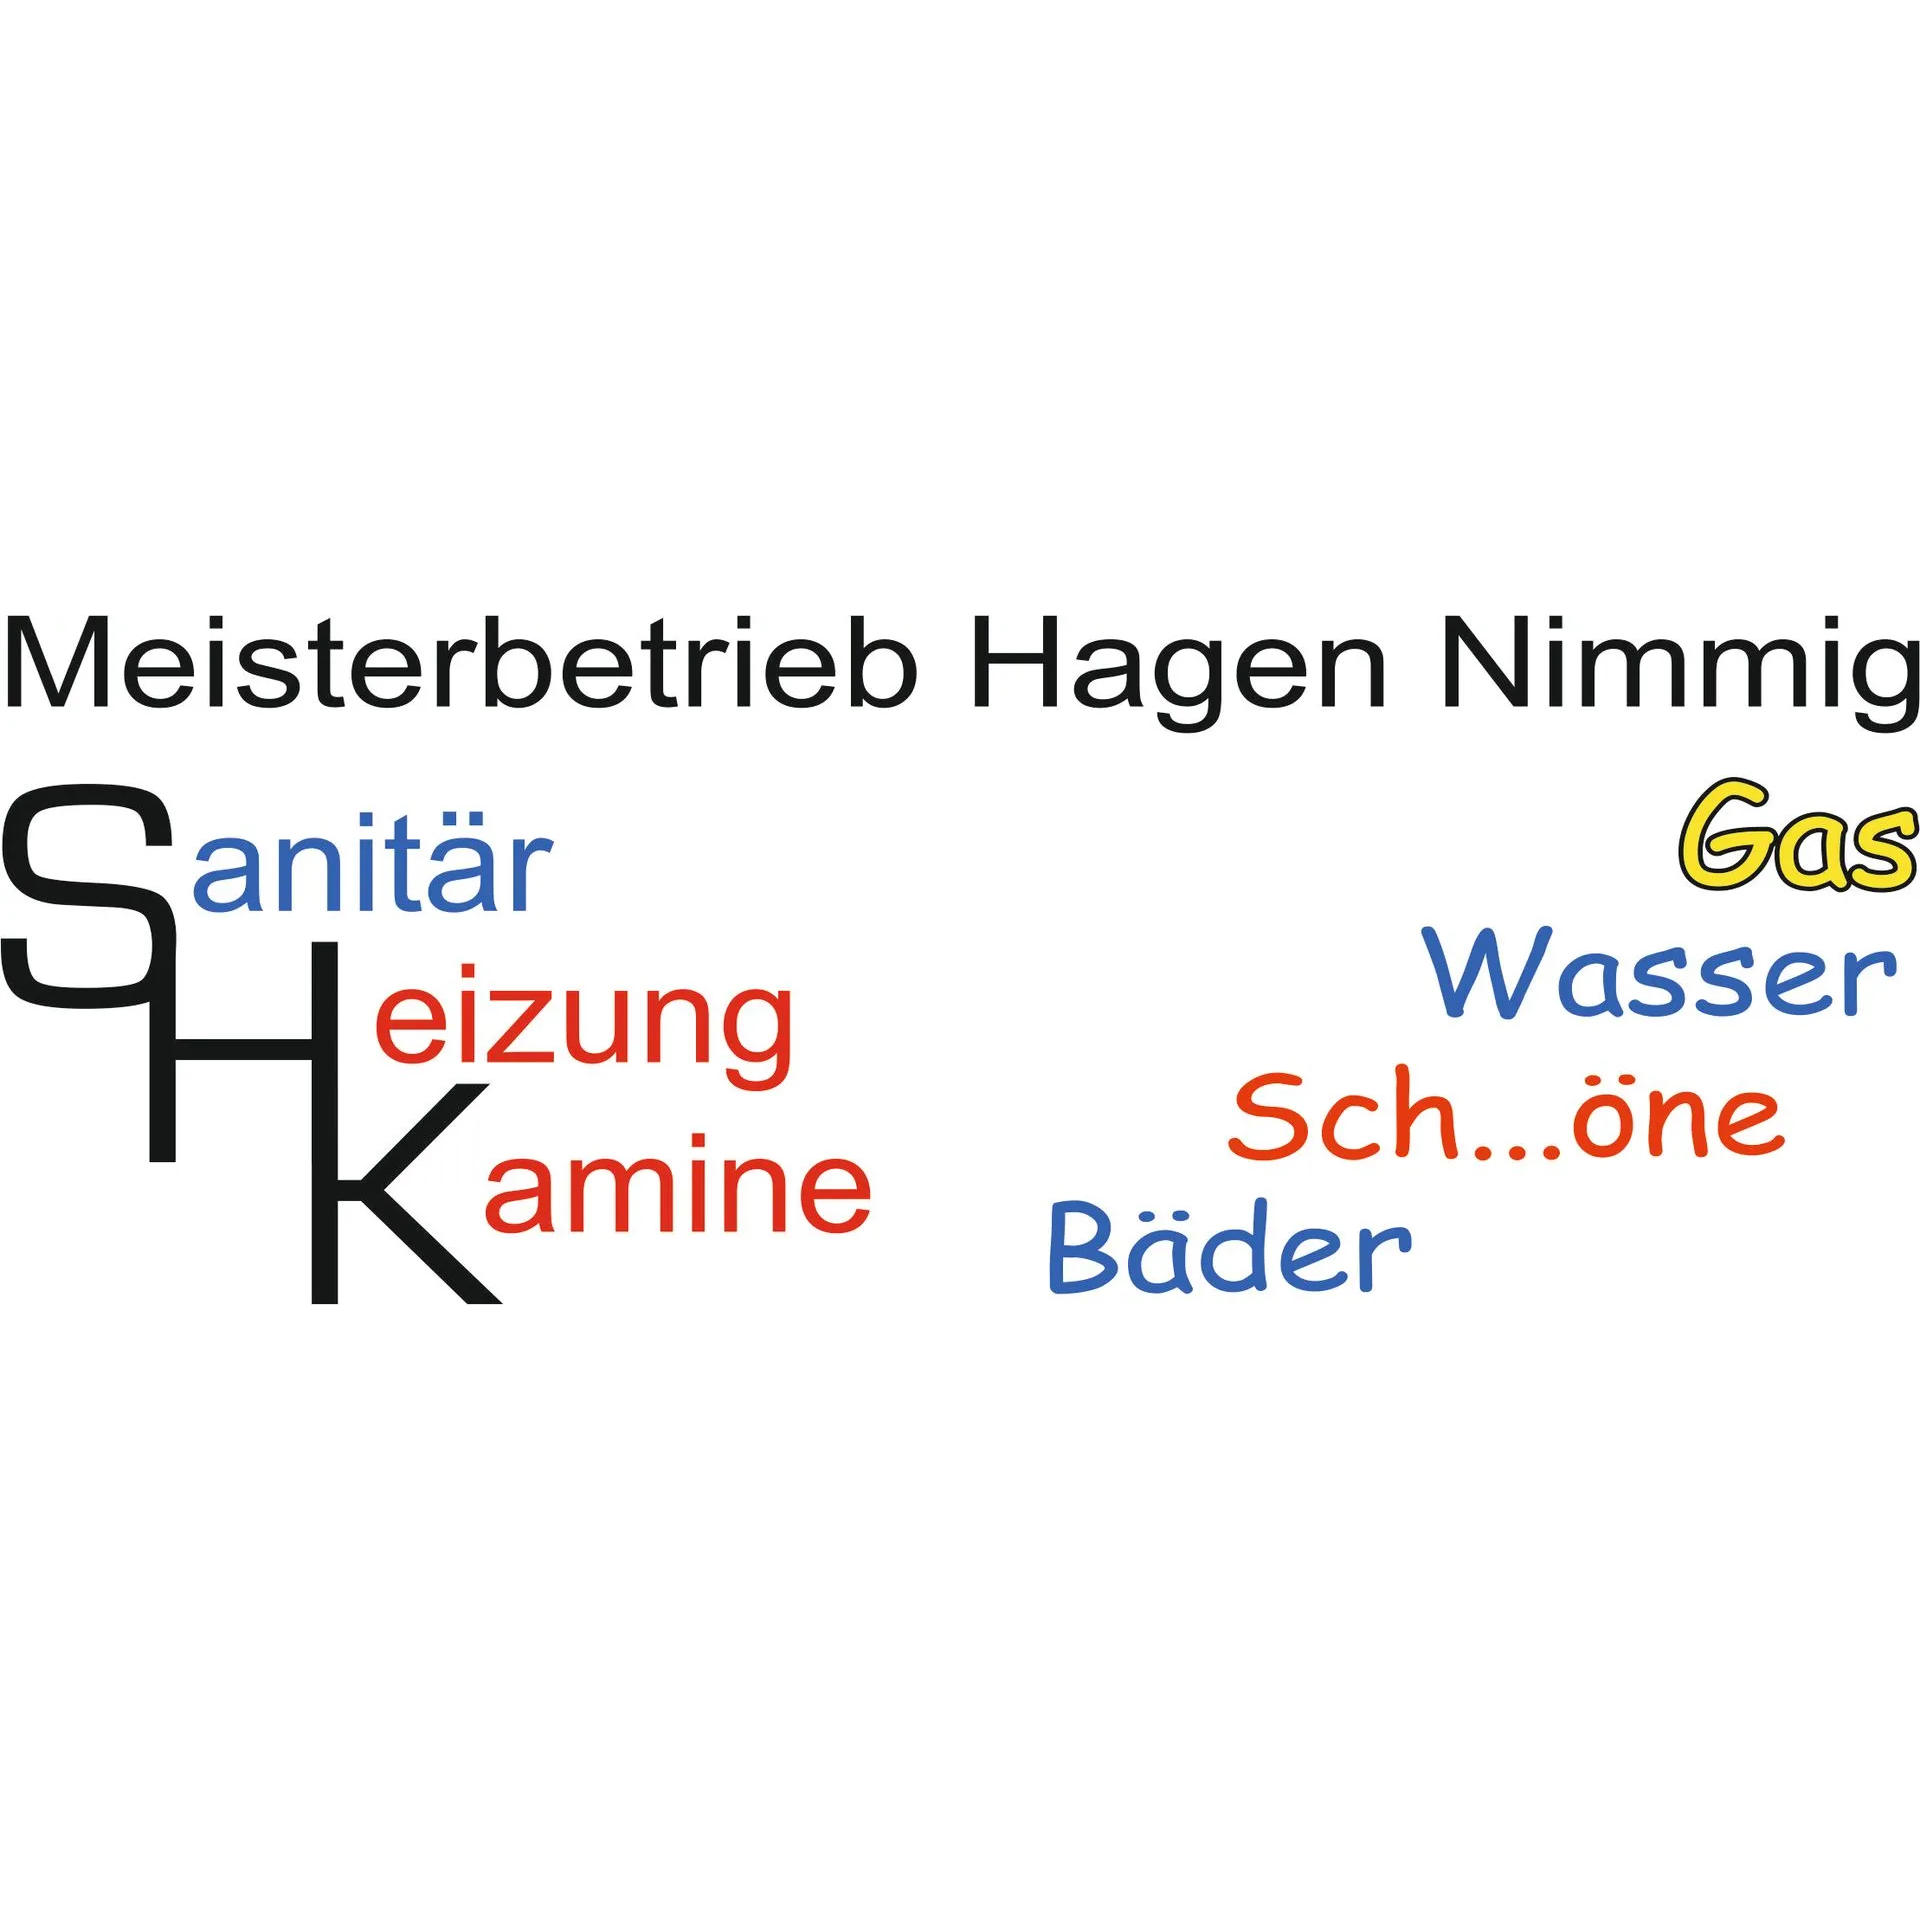 Nimmig Hagen Meisterbetrieb Sanitär, Heizung, Kamine, Kälte, Klima in Nienburg an der Saale - Logo